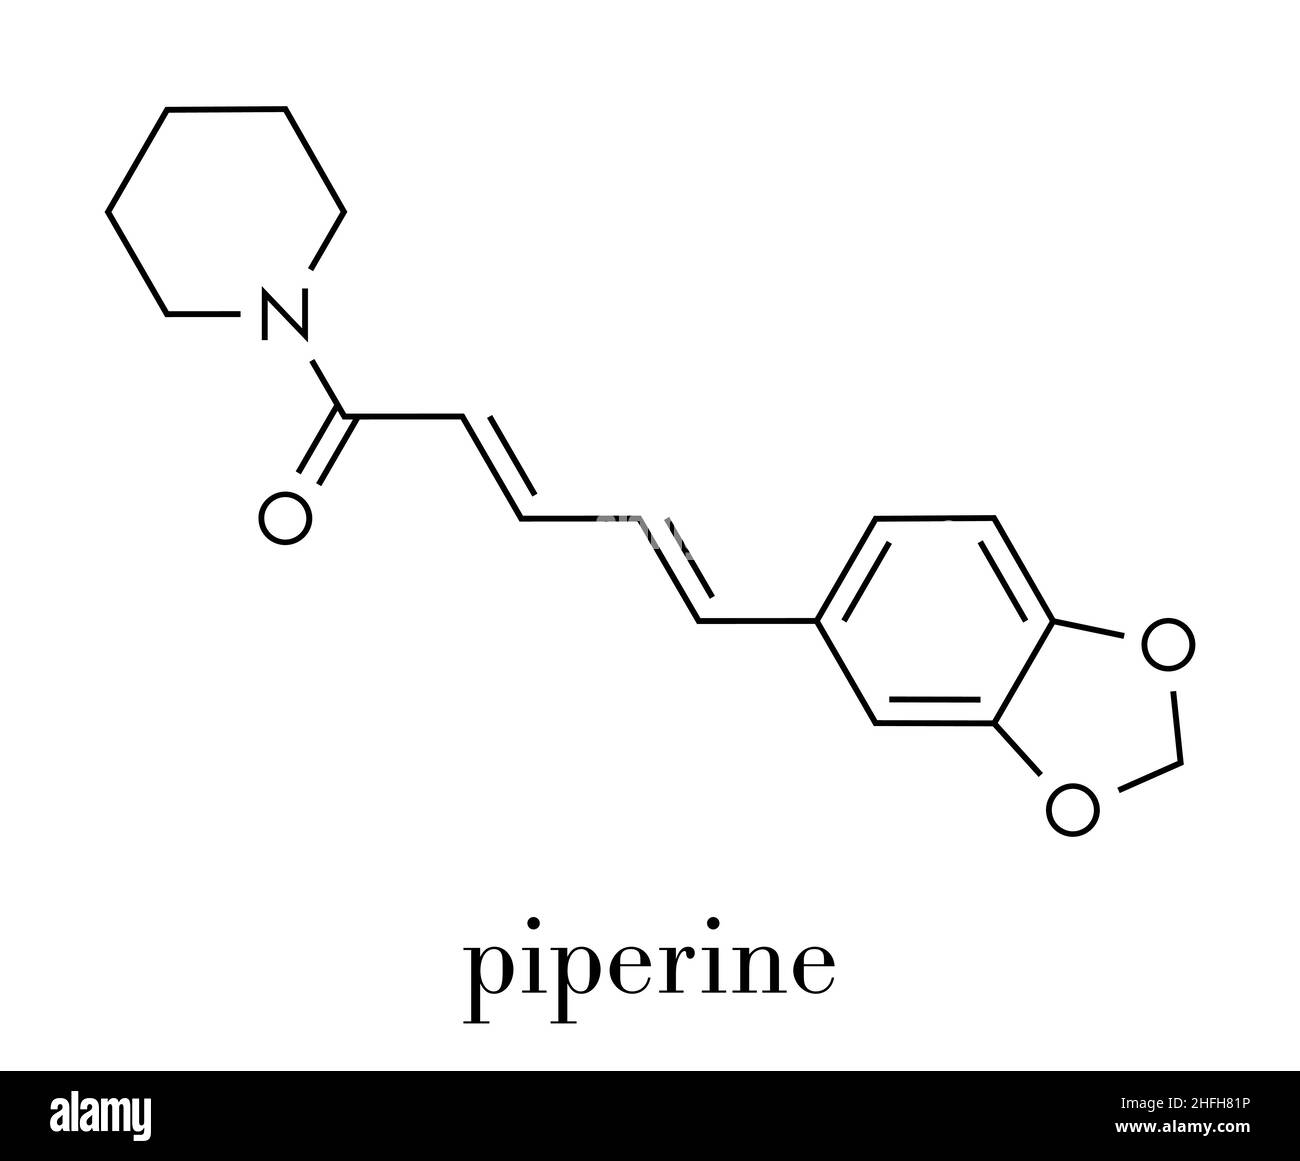 La pipérine du poivre noir molécule. Responsable de l'âcreté de poivre noir et de poivre long. Formule topologique. Illustration de Vecteur